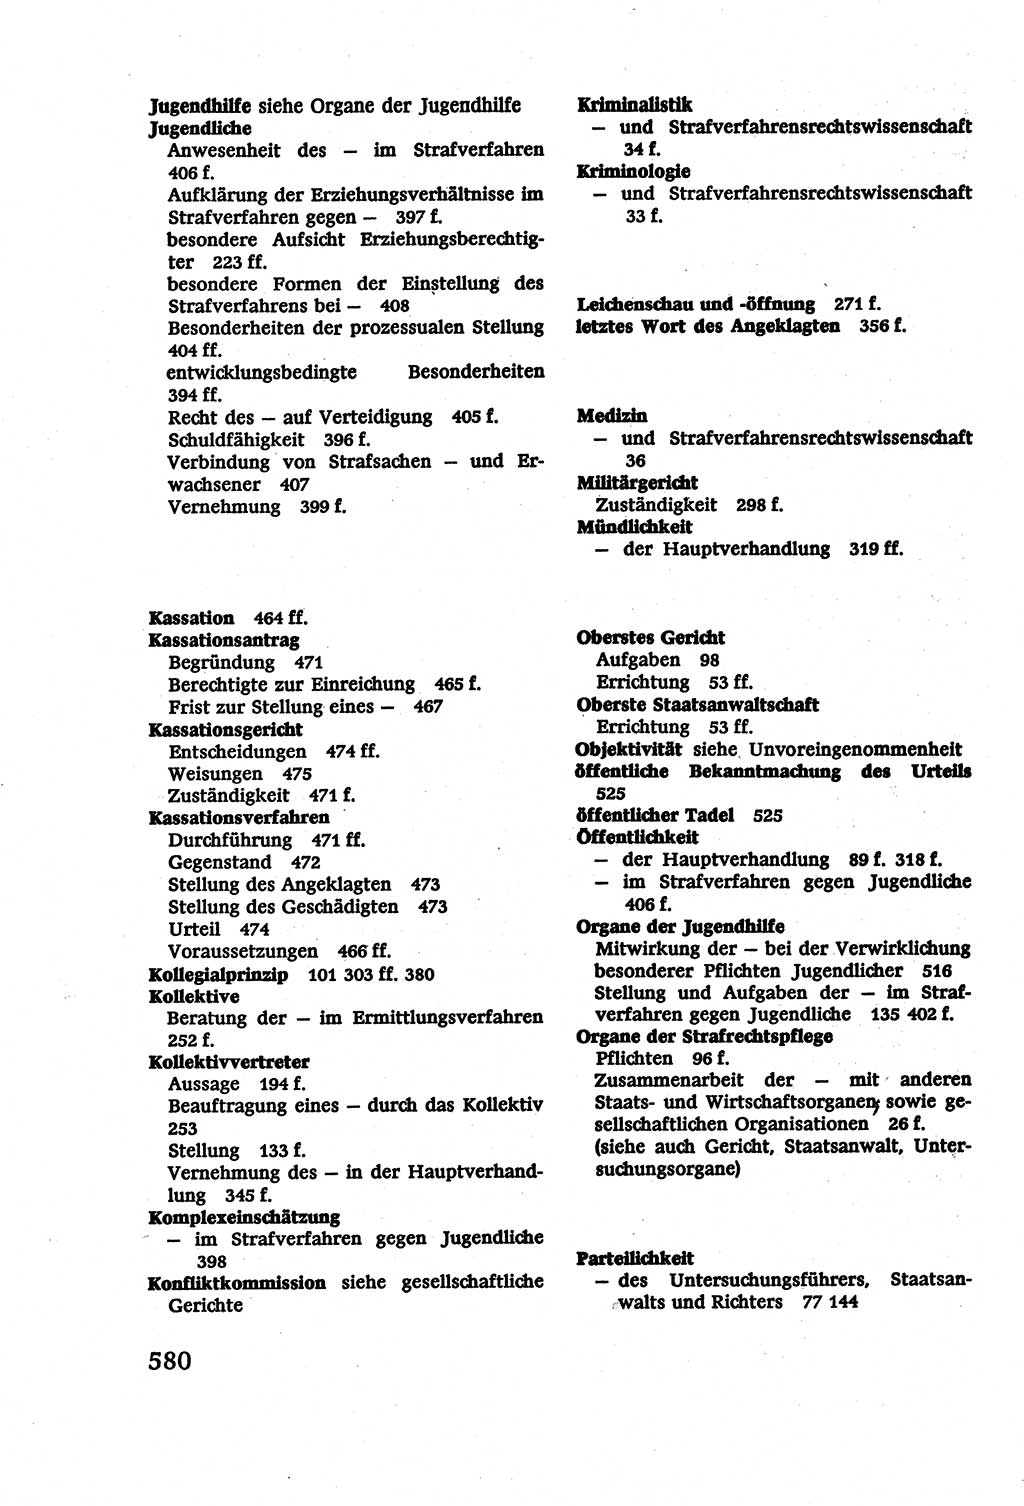 Strafverfahrensrecht [Deutsche Demokratische Republik (DDR)], Lehrbuch 1977, Seite 580 (Strafverf.-R. DDR Lb. 1977, S. 580)